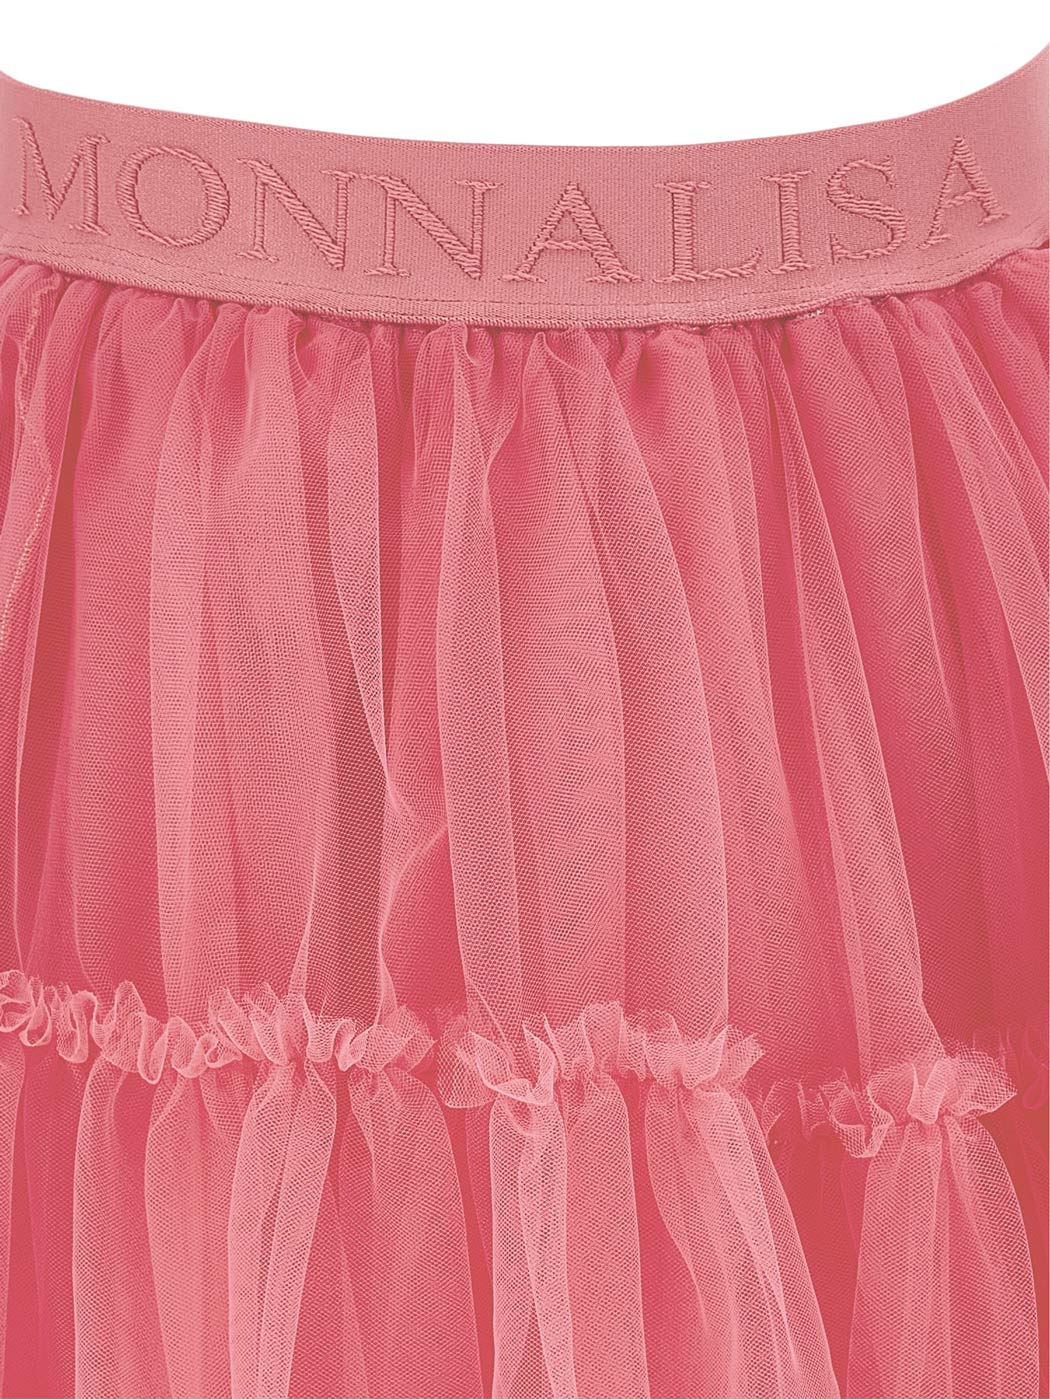 MONNALISA Fuchsia tulle skirt for girl-17BGON